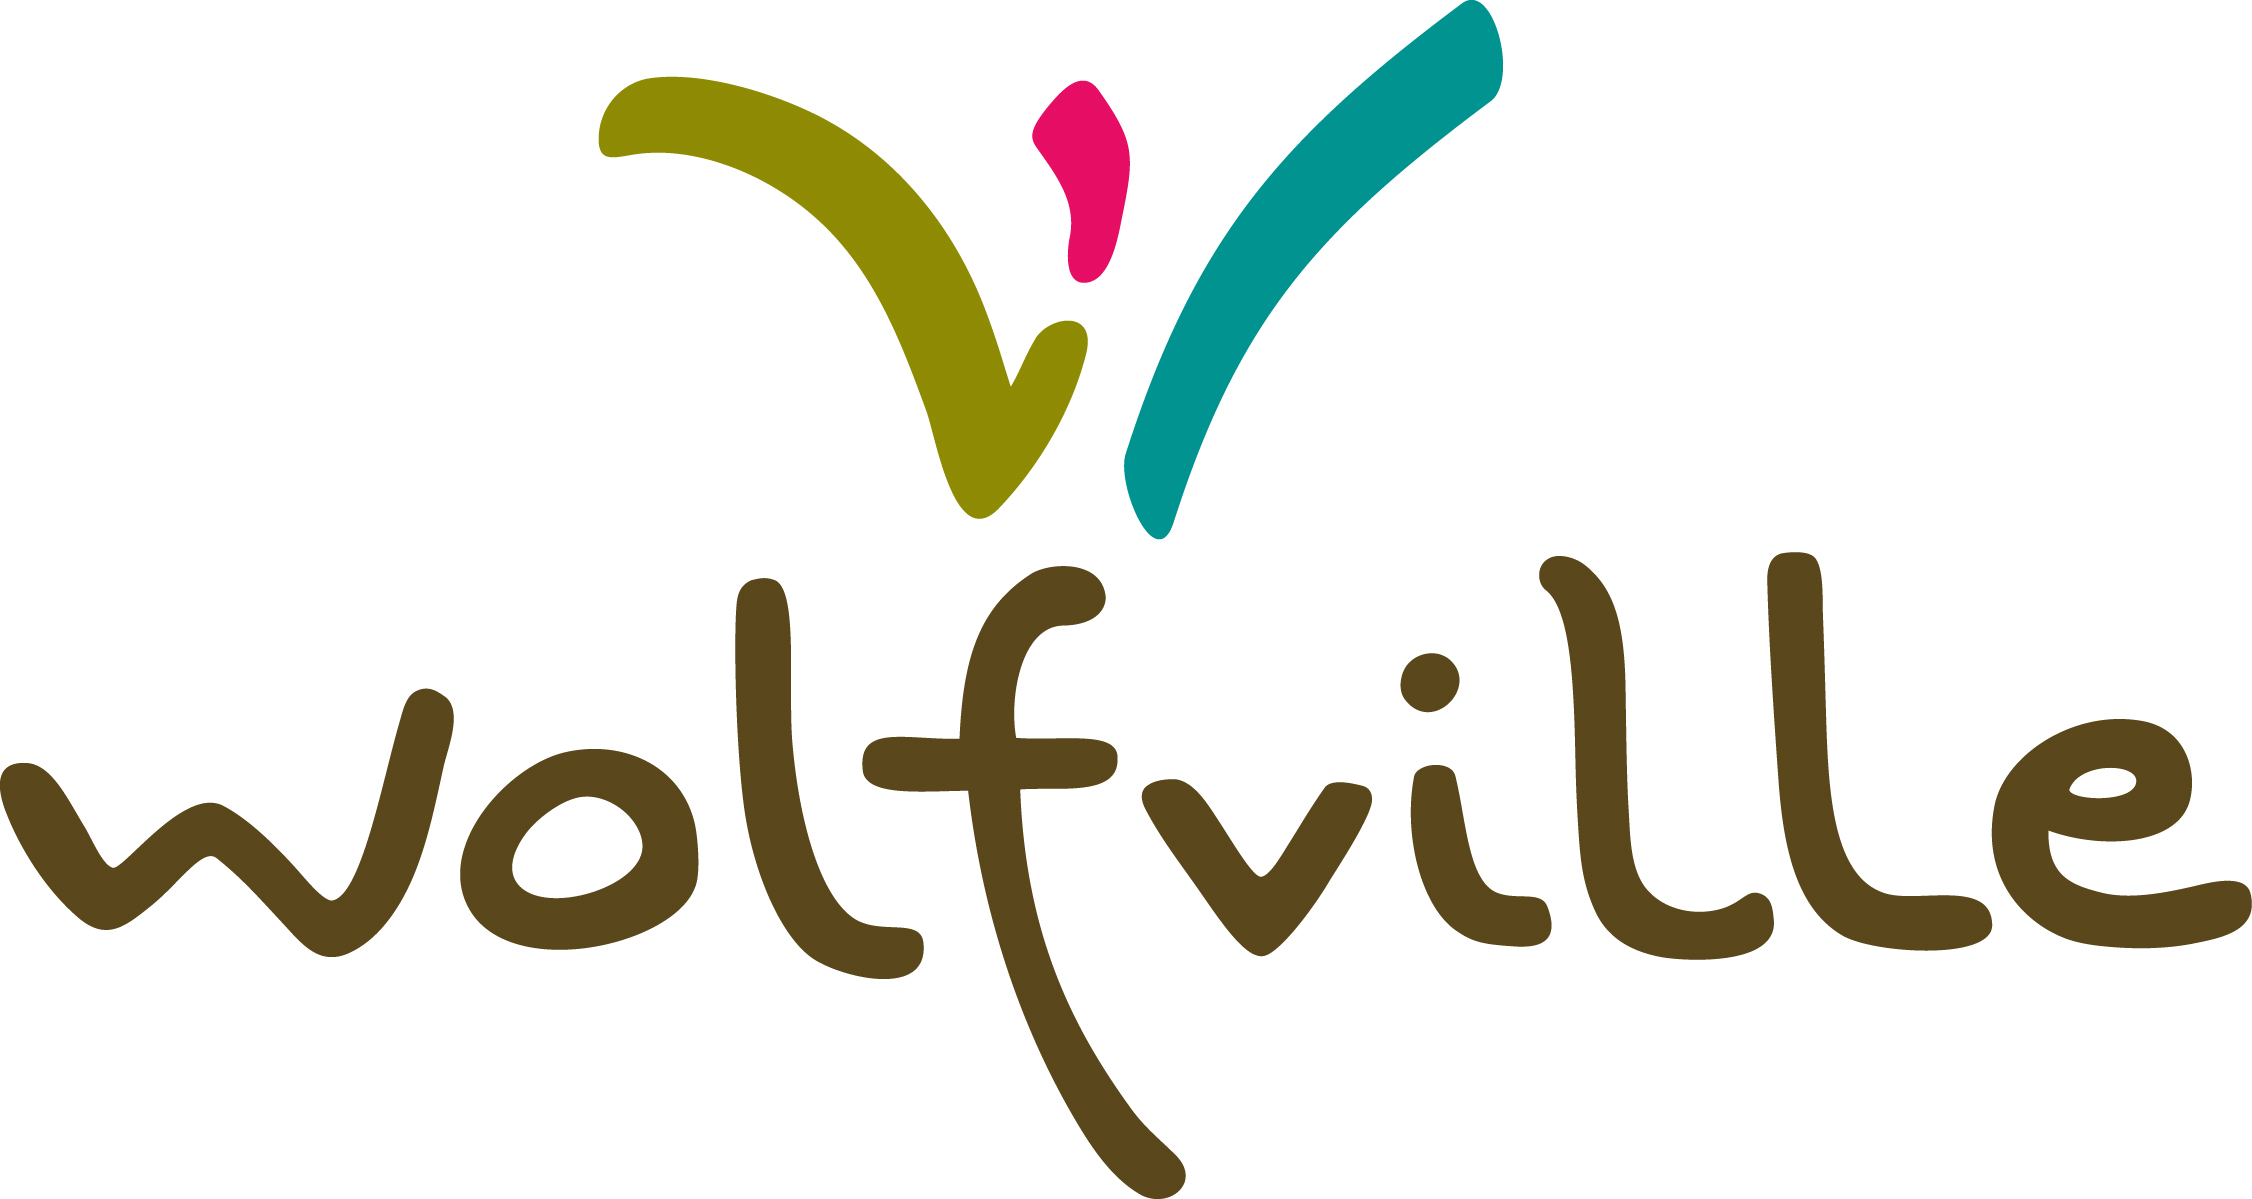 Wolfville logo